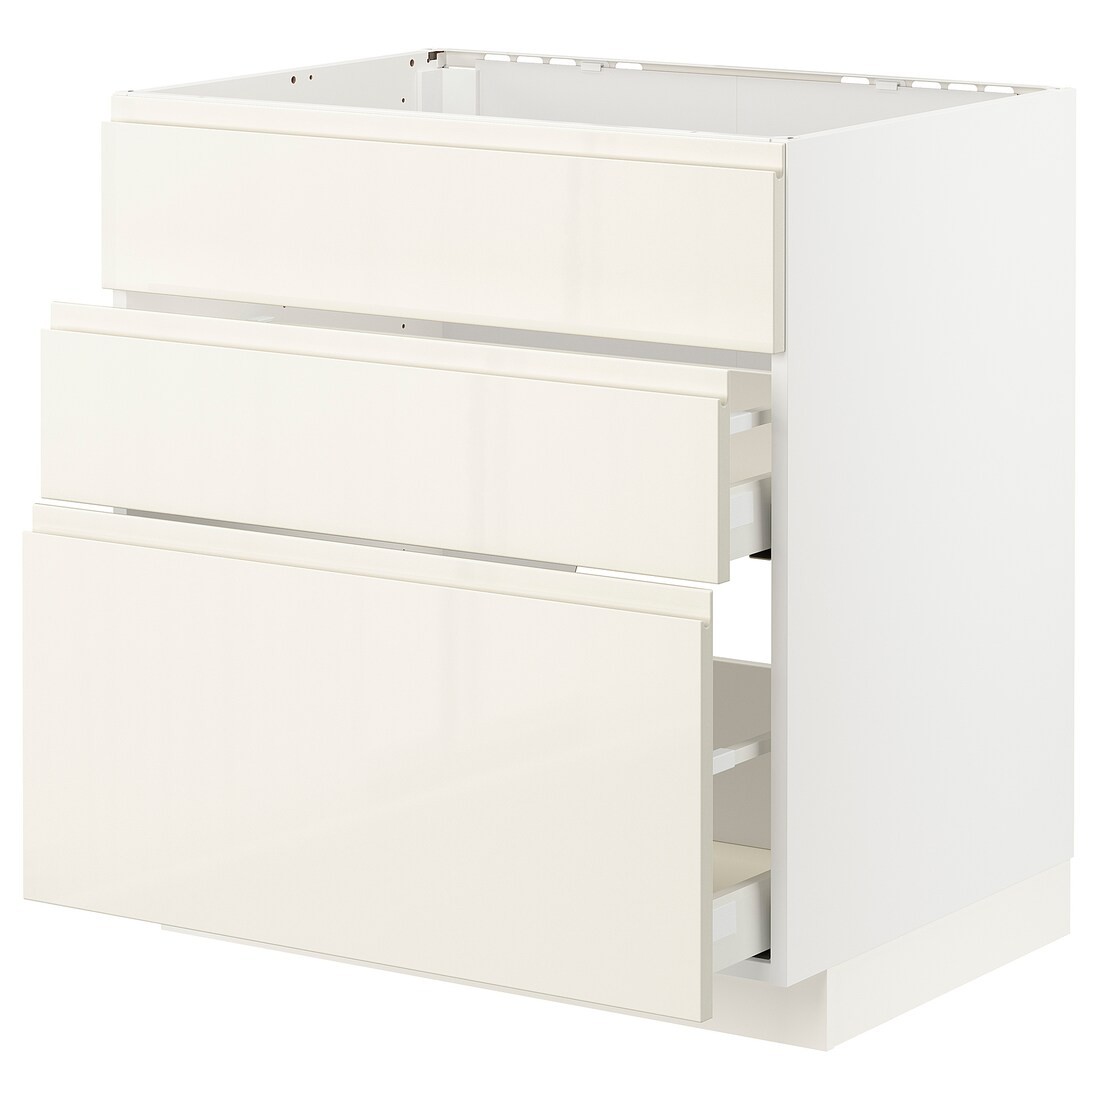 IKEA METOD МЕТОД / MAXIMERA МАКСИМЕРА Напольный шкаф для варочной панели / вытяжка с ящиком, белый / Voxtorp глянцевый светло-бежевый, 80x60 см 59335628 | 593.356.28